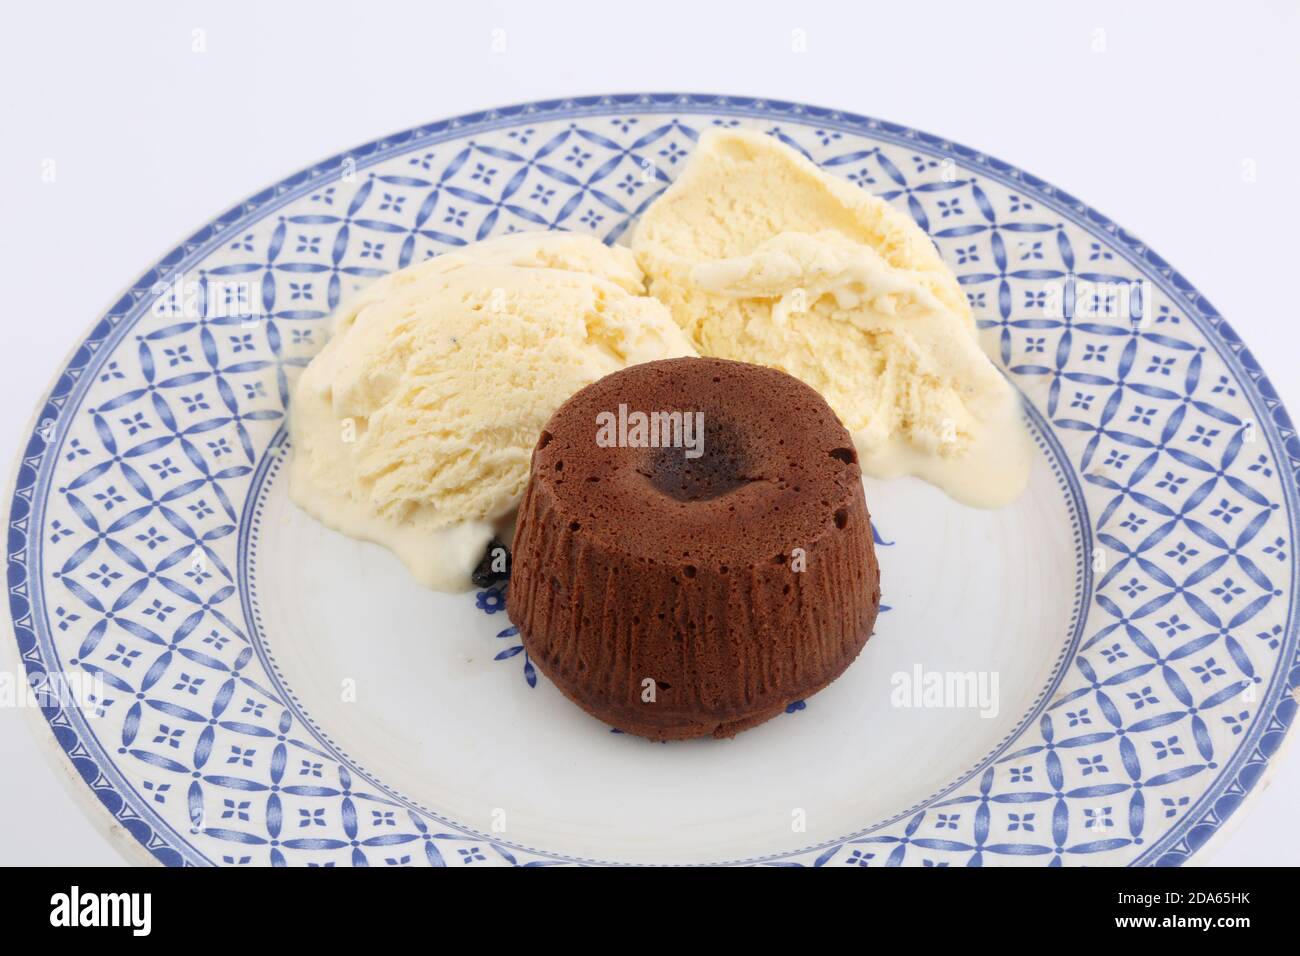 coulant al cioccolato con gelato al vanila Foto Stock